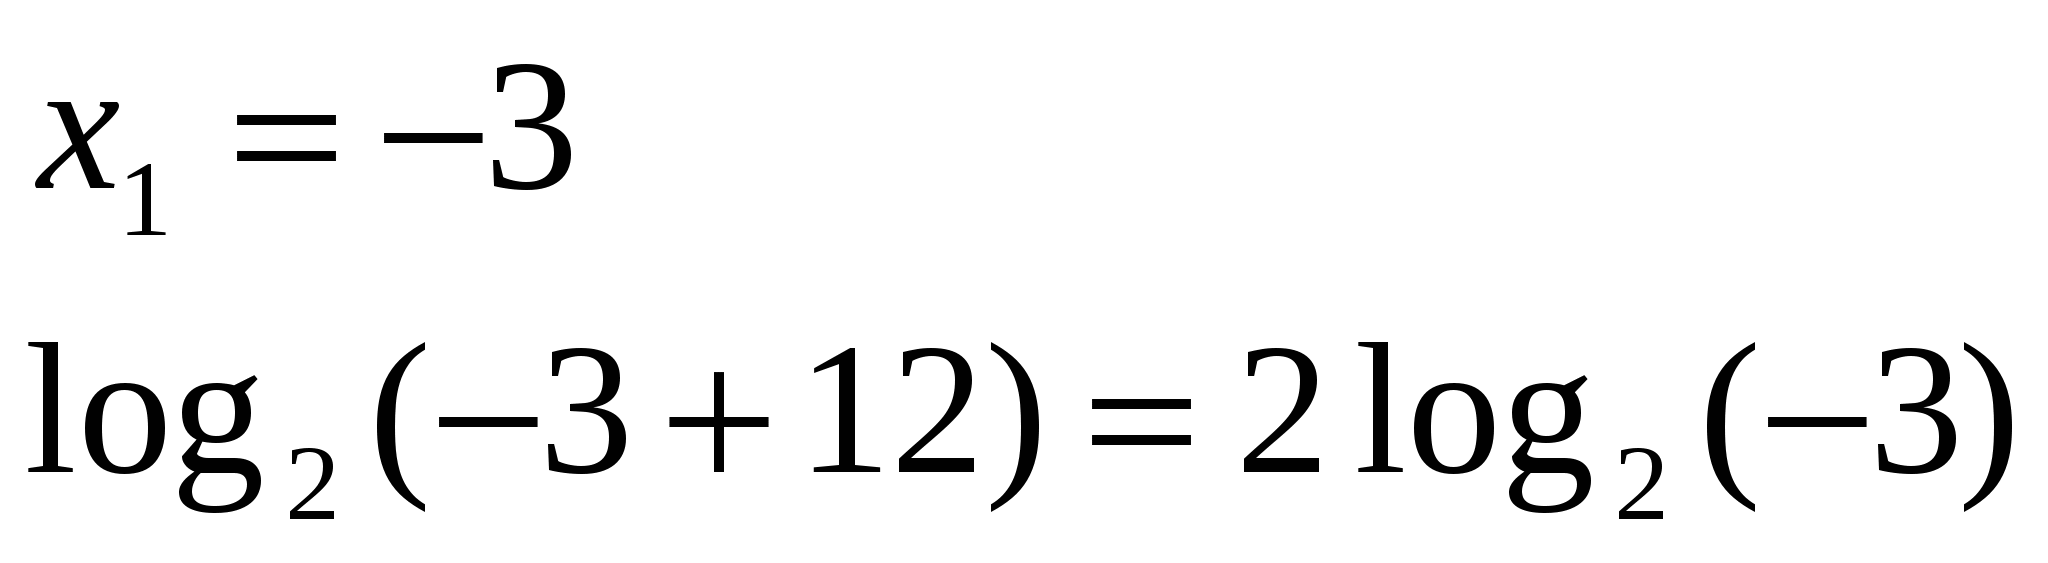 Урок по математике на тему Решение логарифмических уравнений